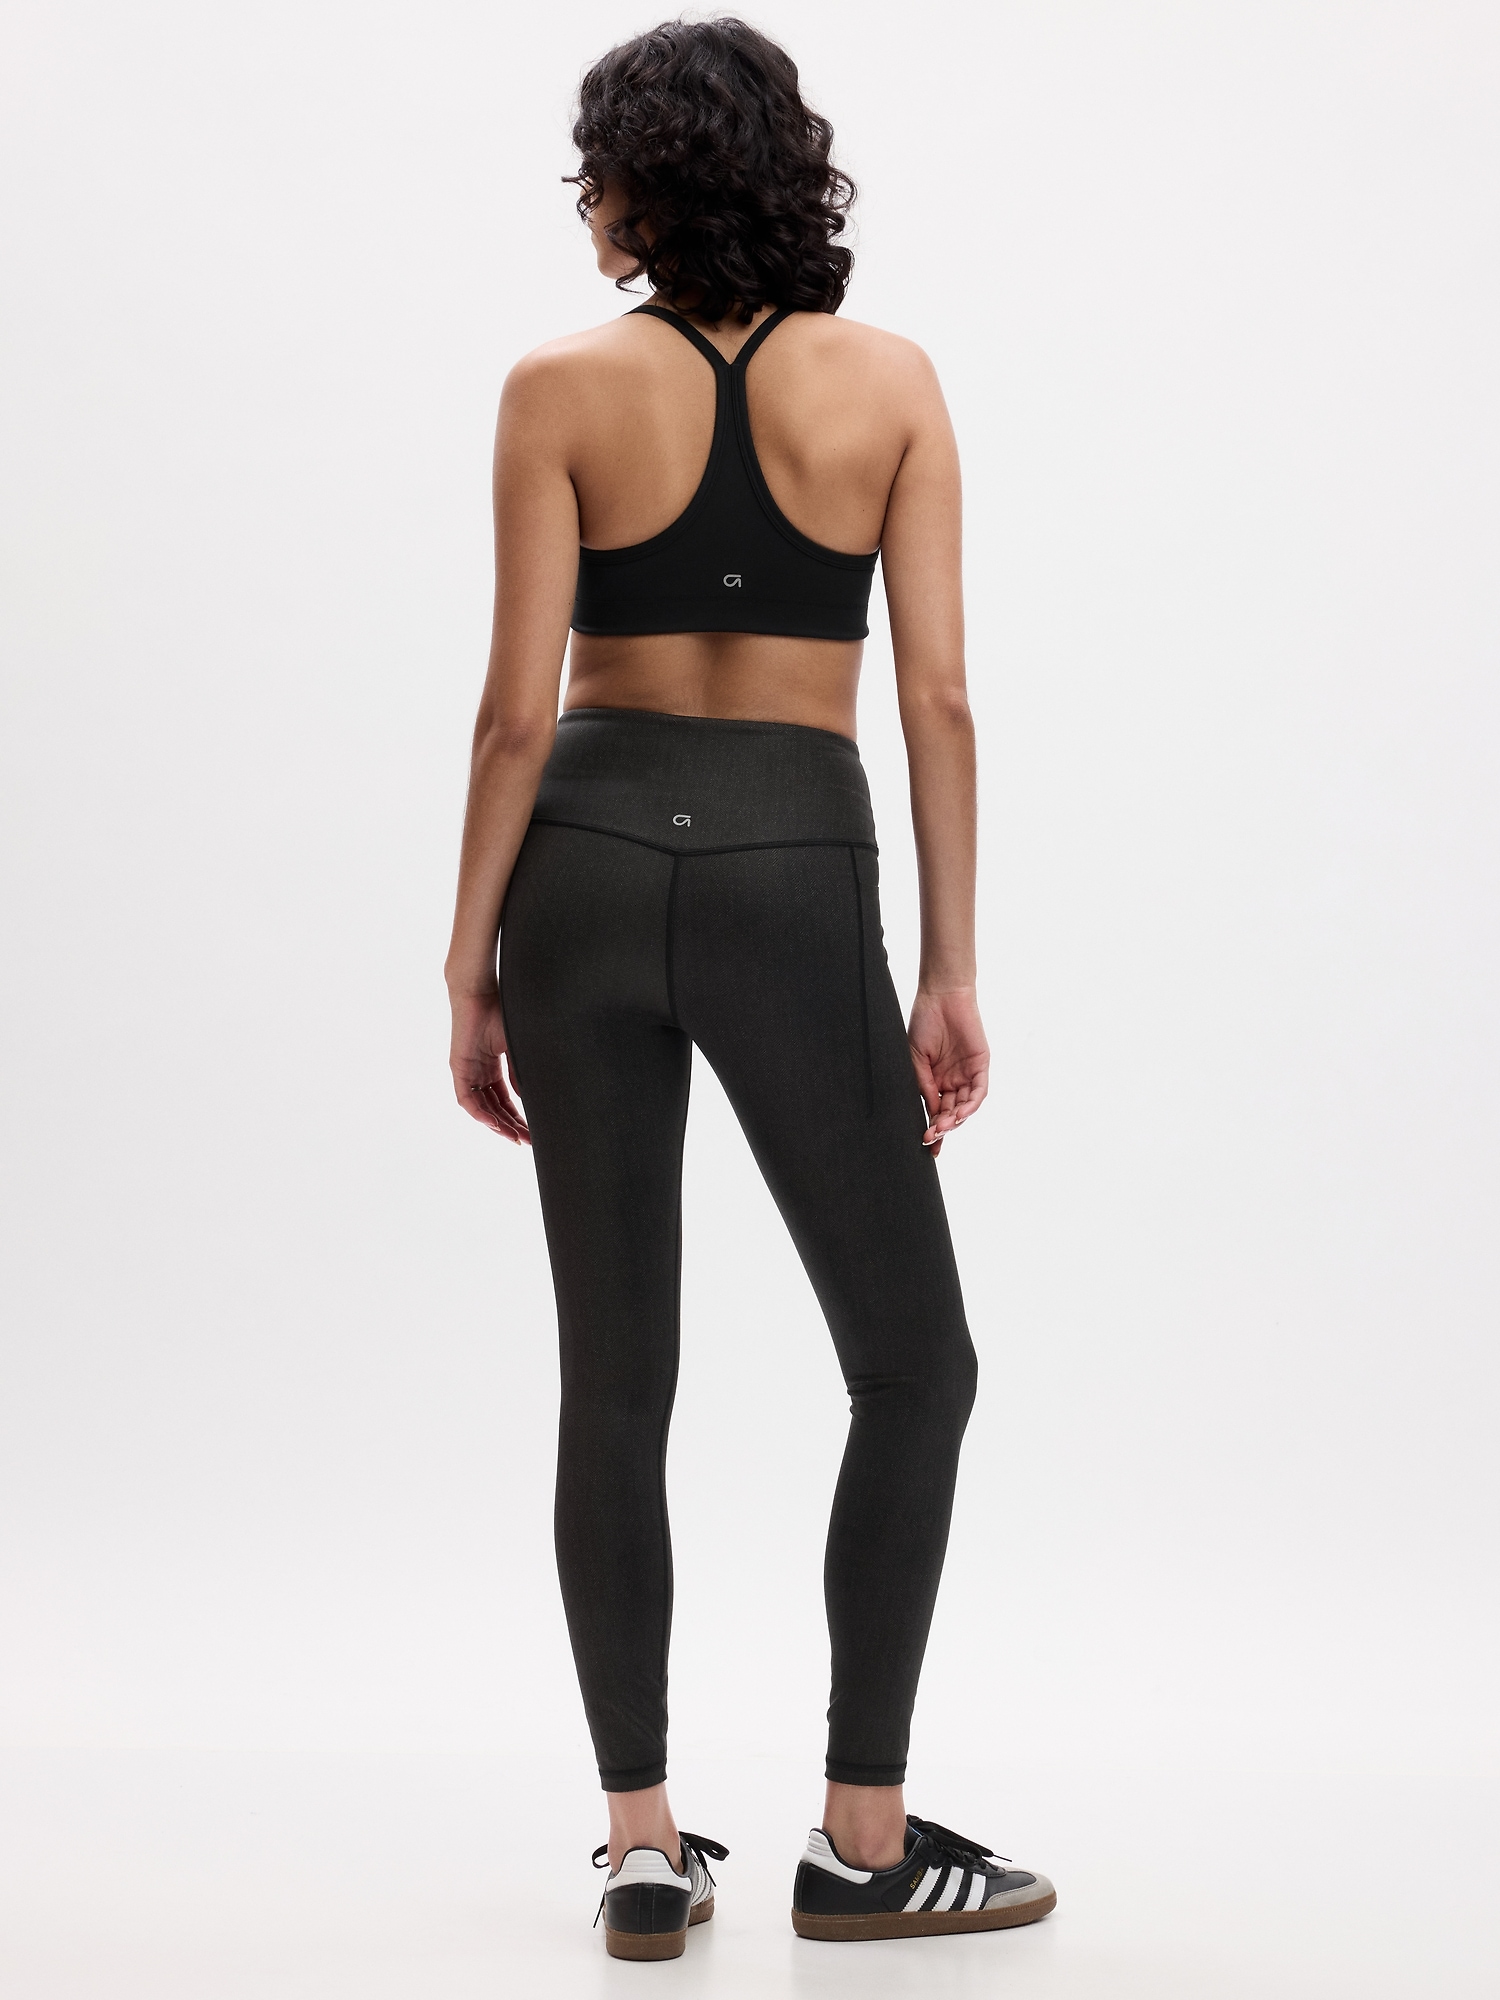 Black Lululemon full length leggings